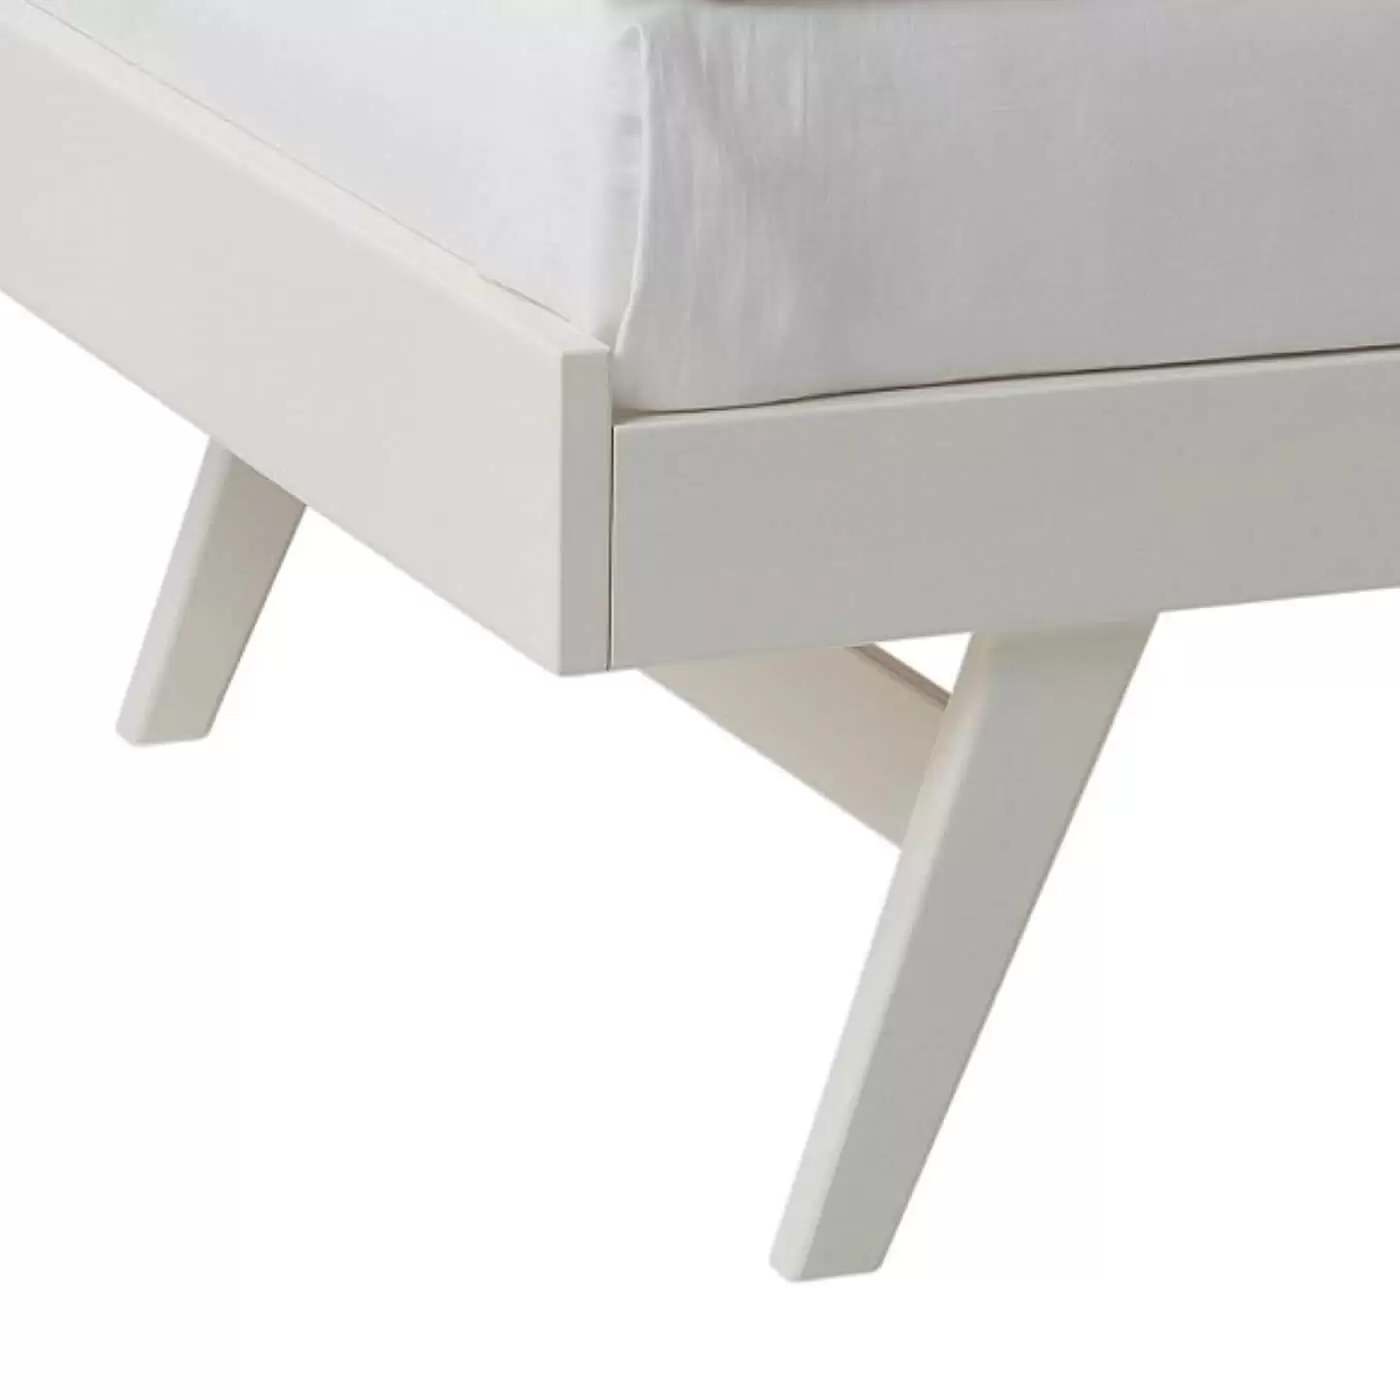 Łóżko na nóżkach NOTTE białe drewniane. Przybliżony widok na wysokie skośne nóżki łóżka z drewna brzozy skandynawskiej lakierowanej na kolor biały mat. Nowoczesny design